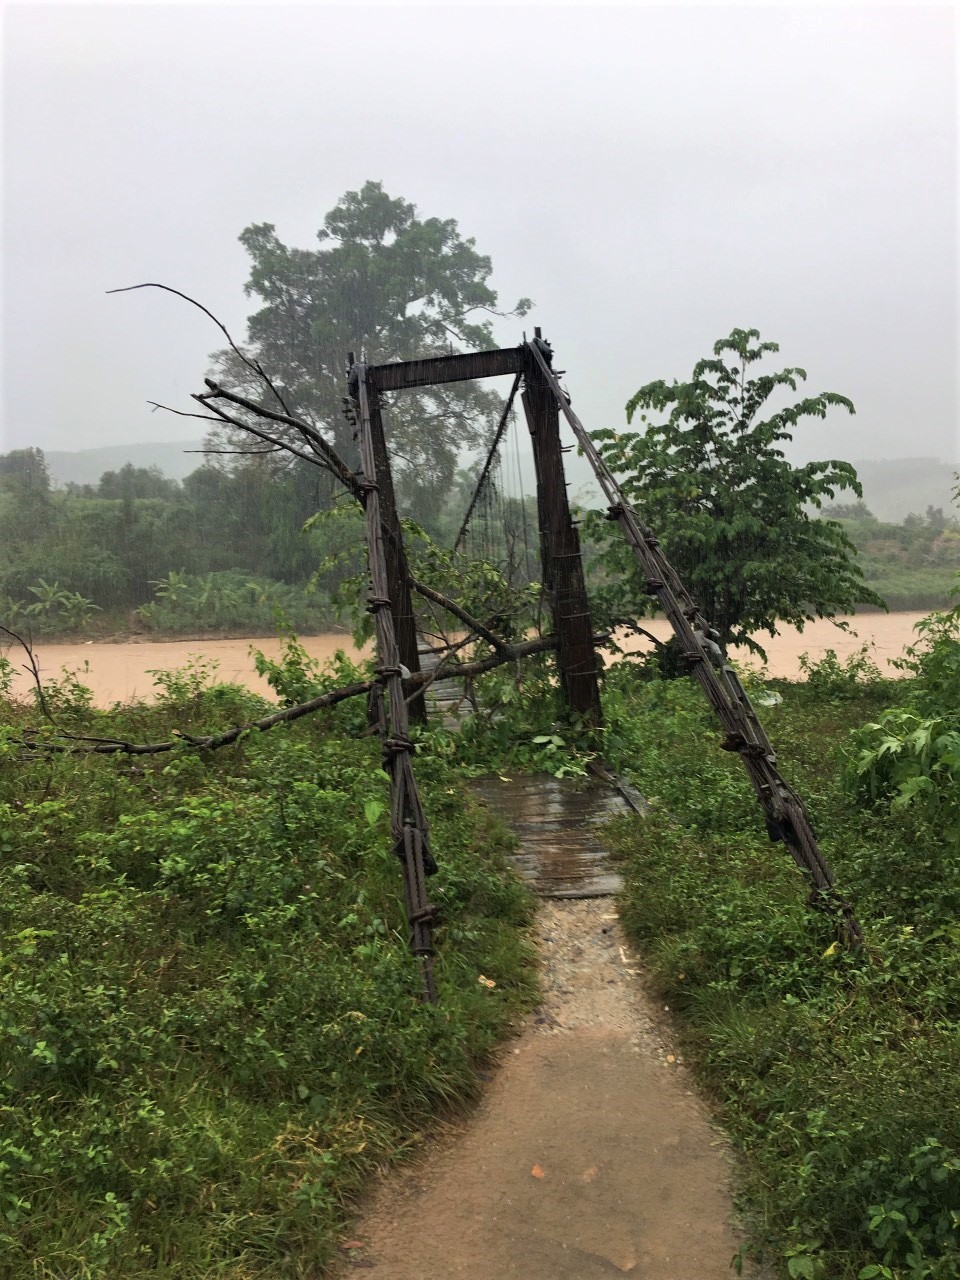 Bão số 9 đổ bộ vào tỉnh Kon Tum đã khiến cho hàng loạt cây cầu dân sinh ở địa phương này bị nước lũ cuốn trôi, hàng trăm hộ dân bị chia cắt, cô lập với bên ngoài. Ảnh T.A